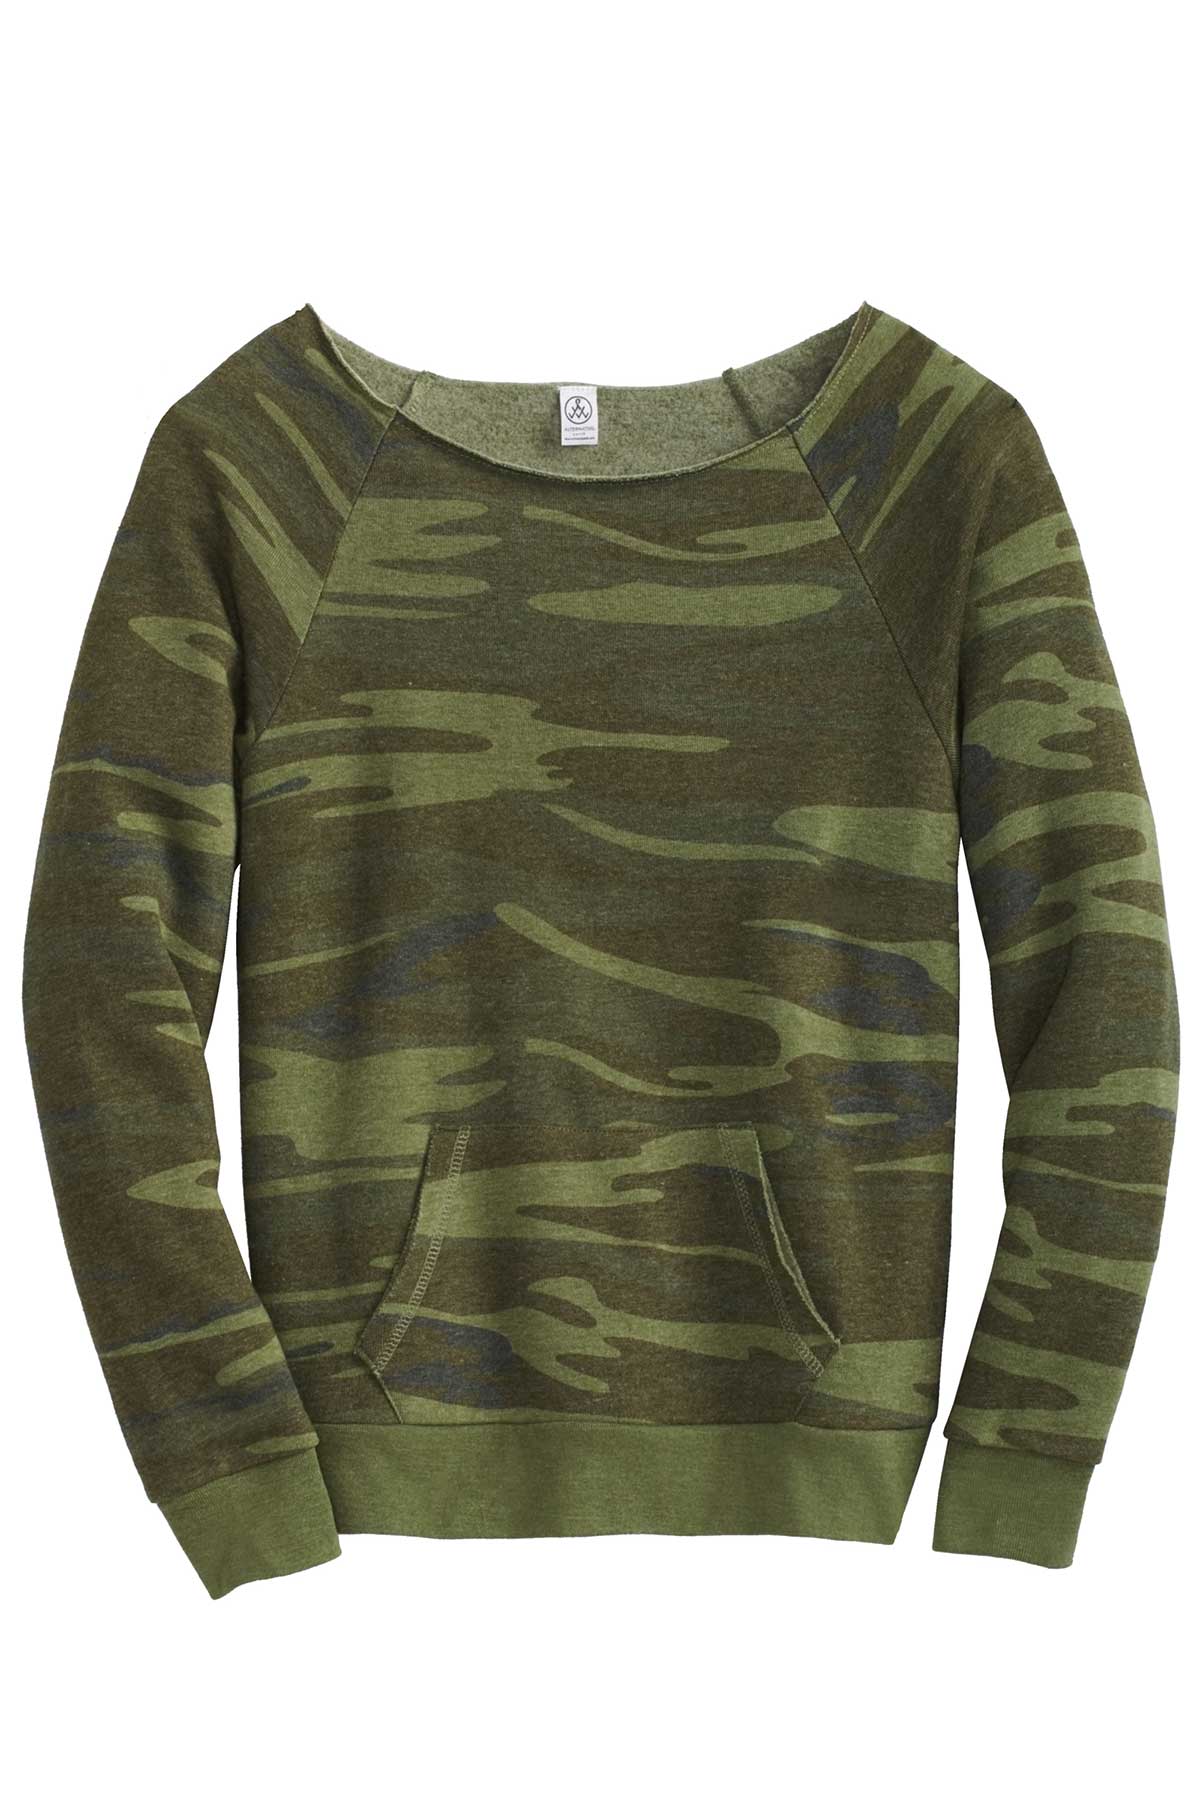 Monogrammed Women's Camo Fleece Sweatshirt